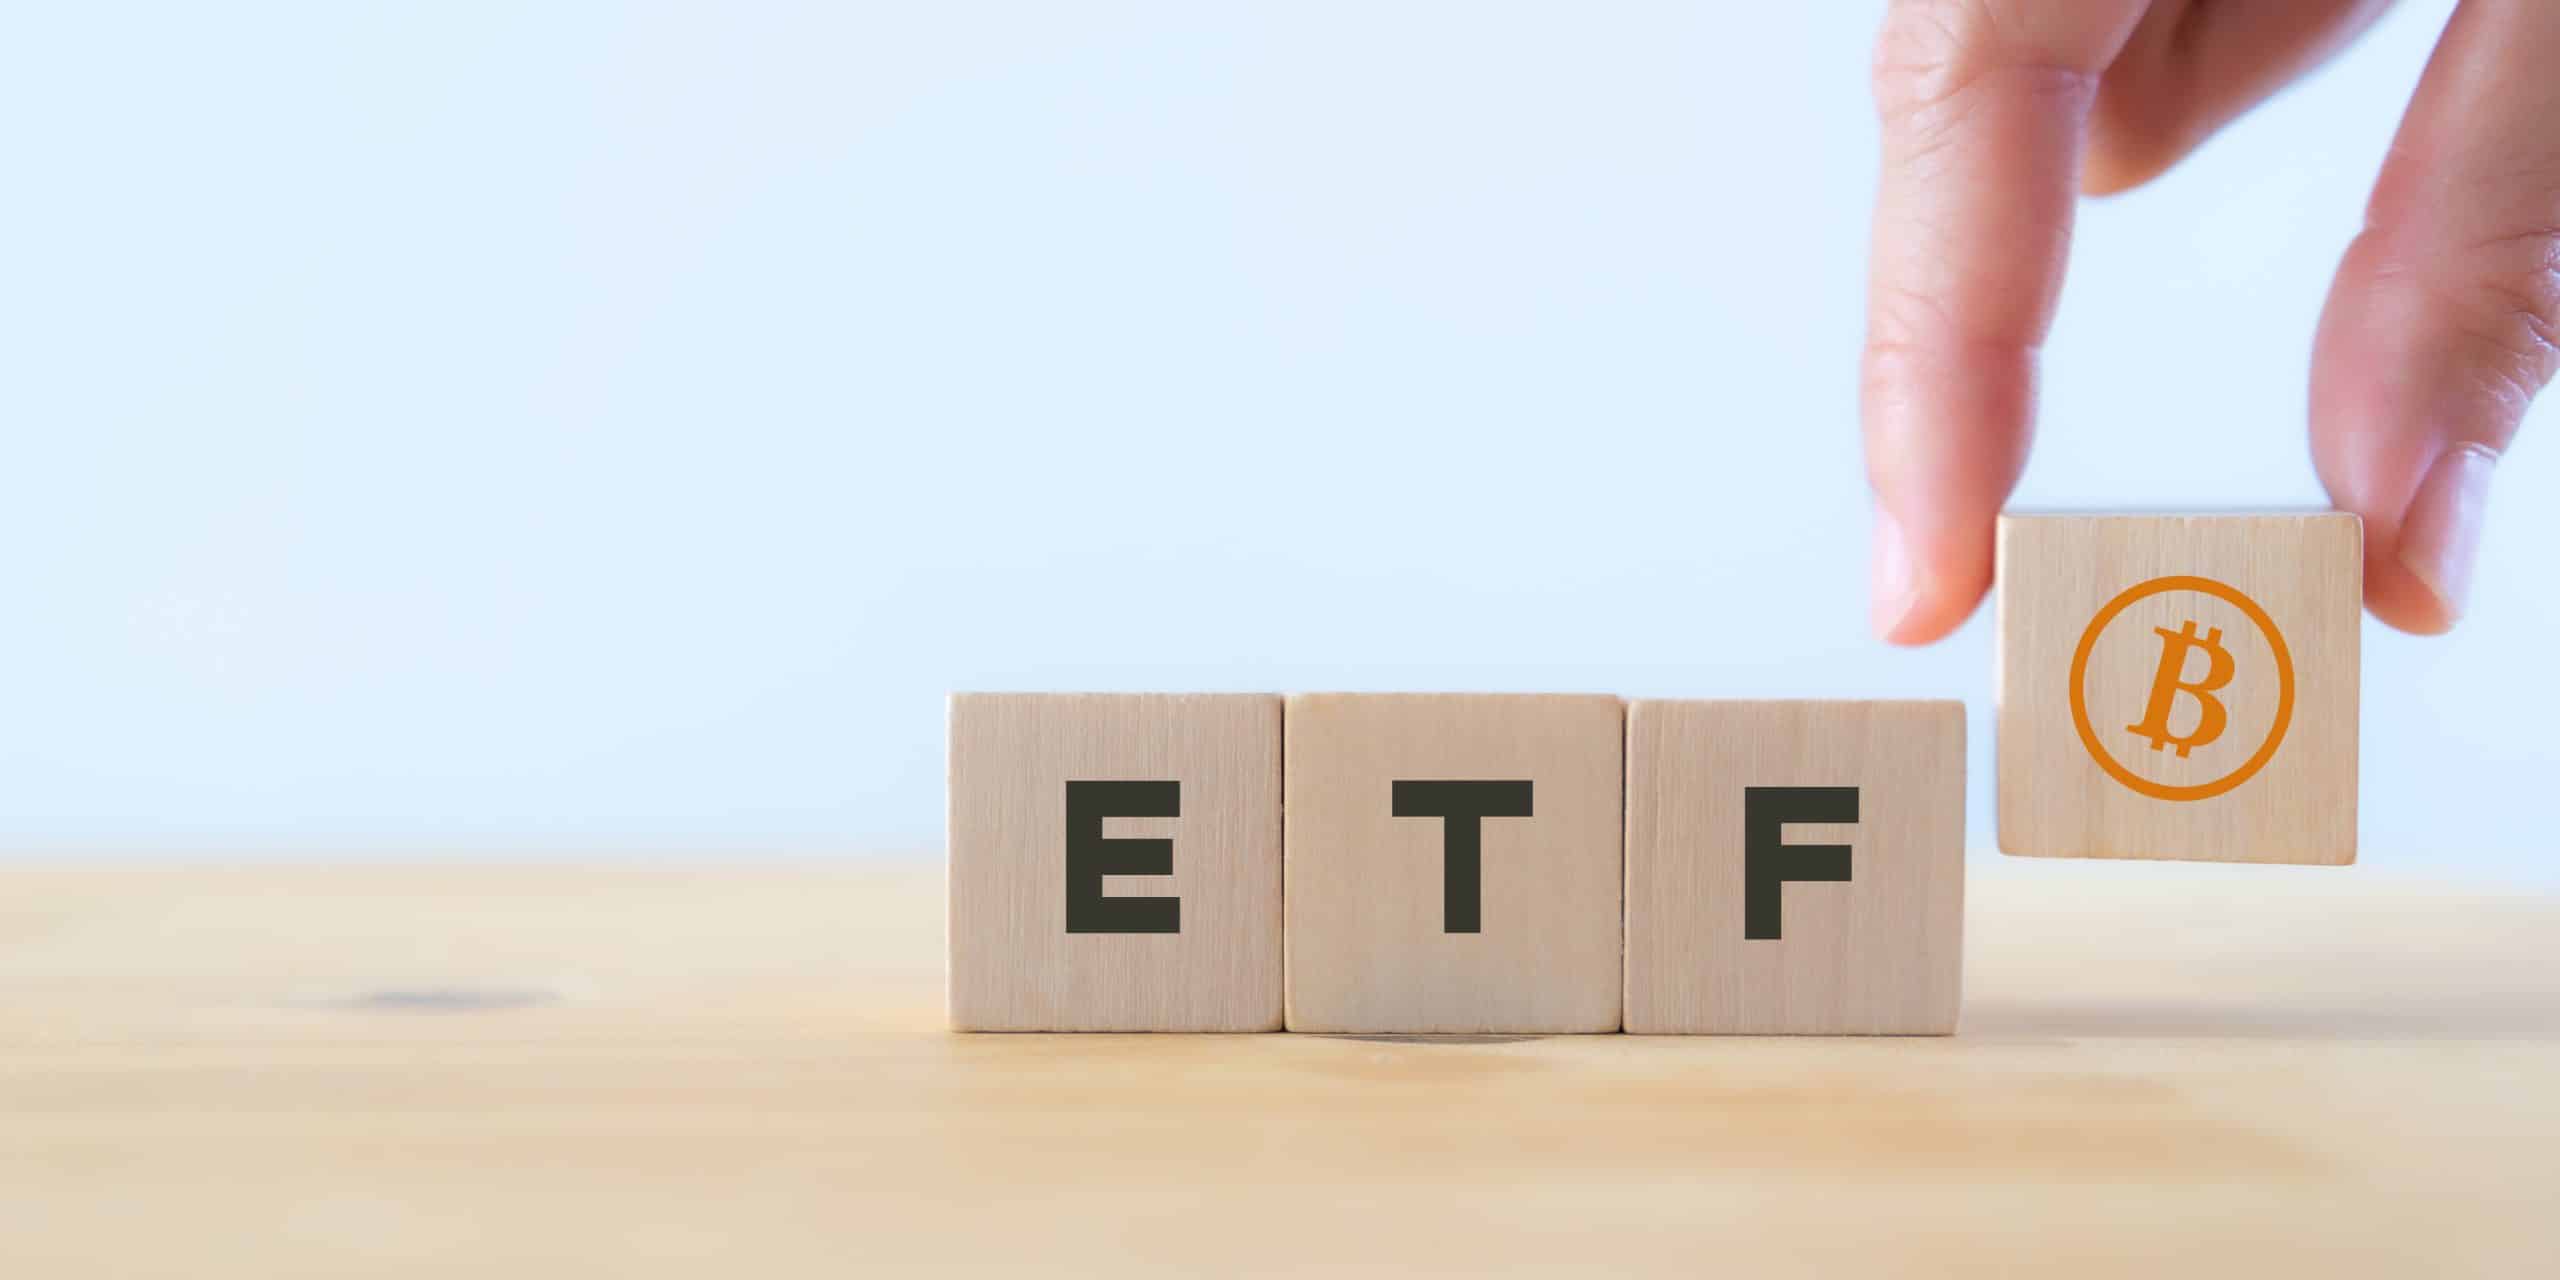 اقتراب موعد اتخاذ القرار بخصوص ETFs التداول الفوريّ لبيتكوين: ما هيَ التوقعات لشهر كانون الثاني/يناير؟